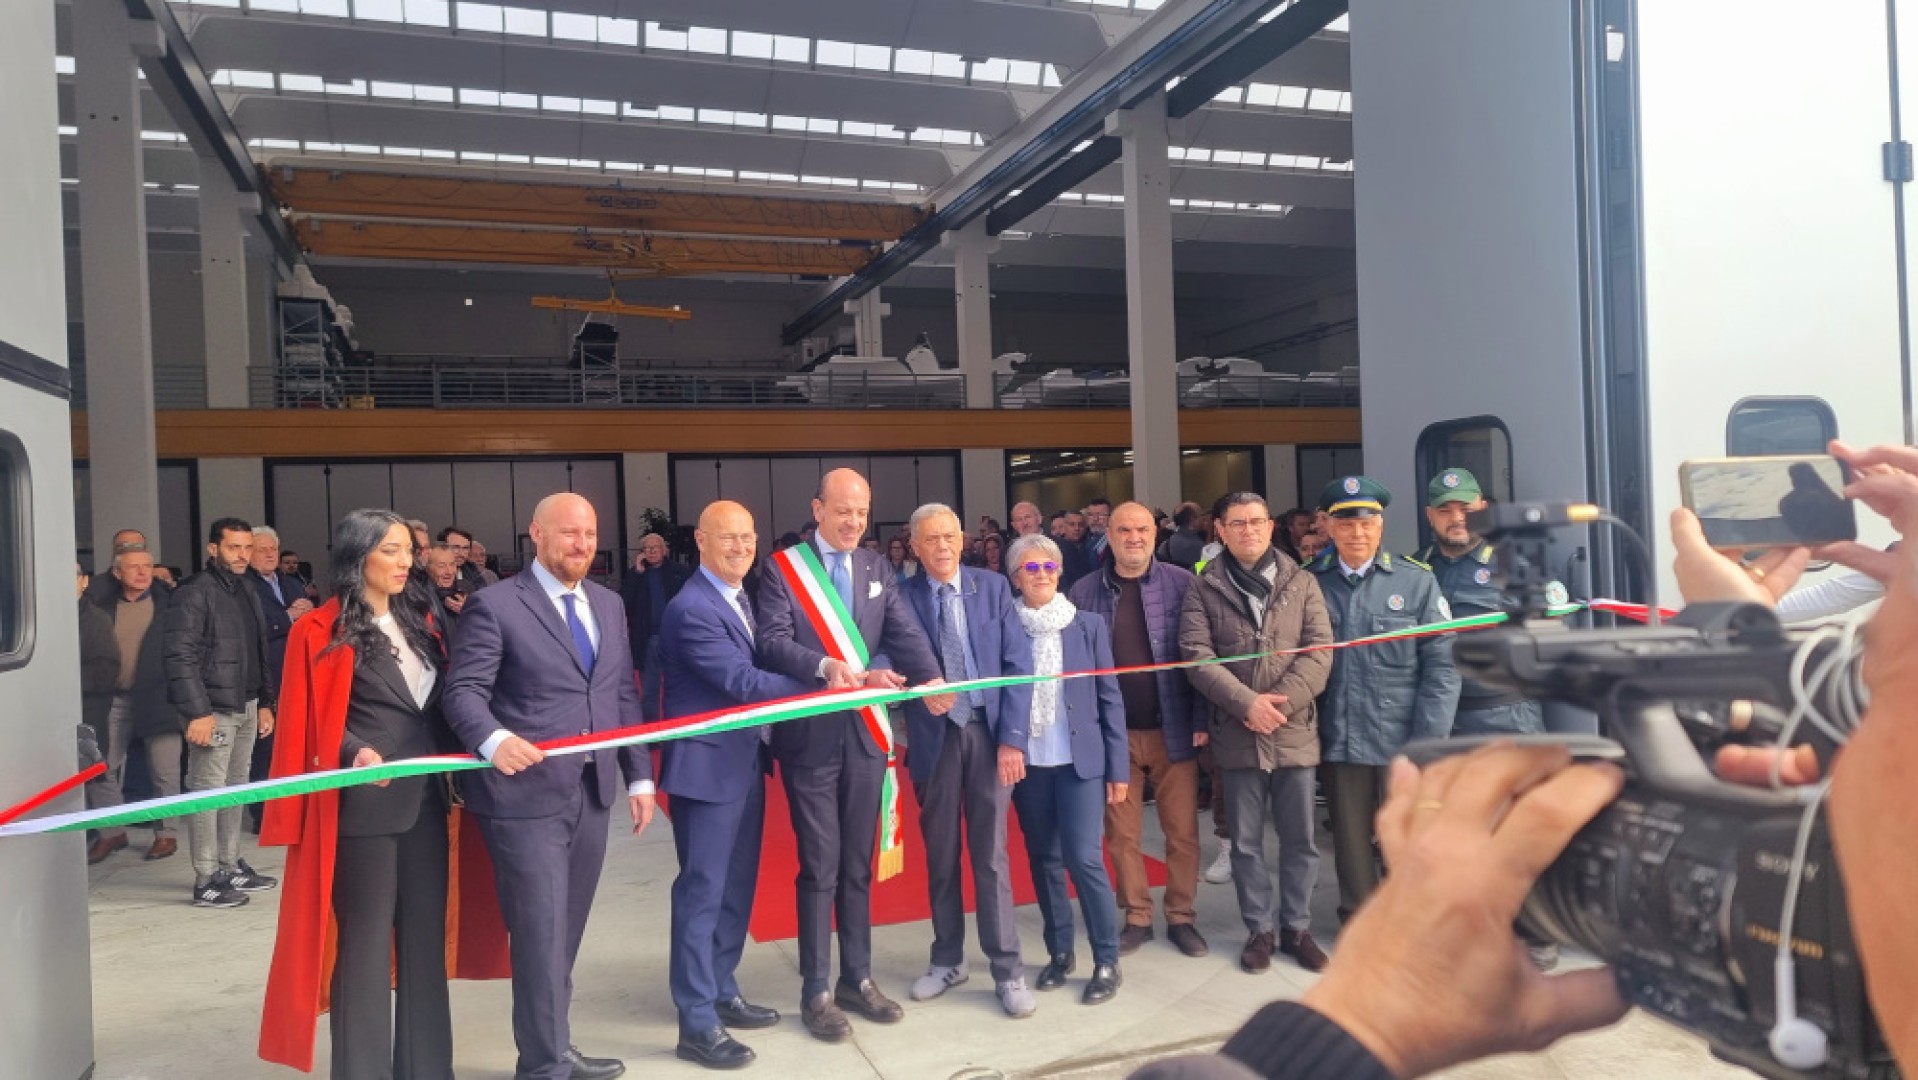 L'inaugurazione del nuovo stabilimento Motonautica Vesuviana a Striano, Napoli